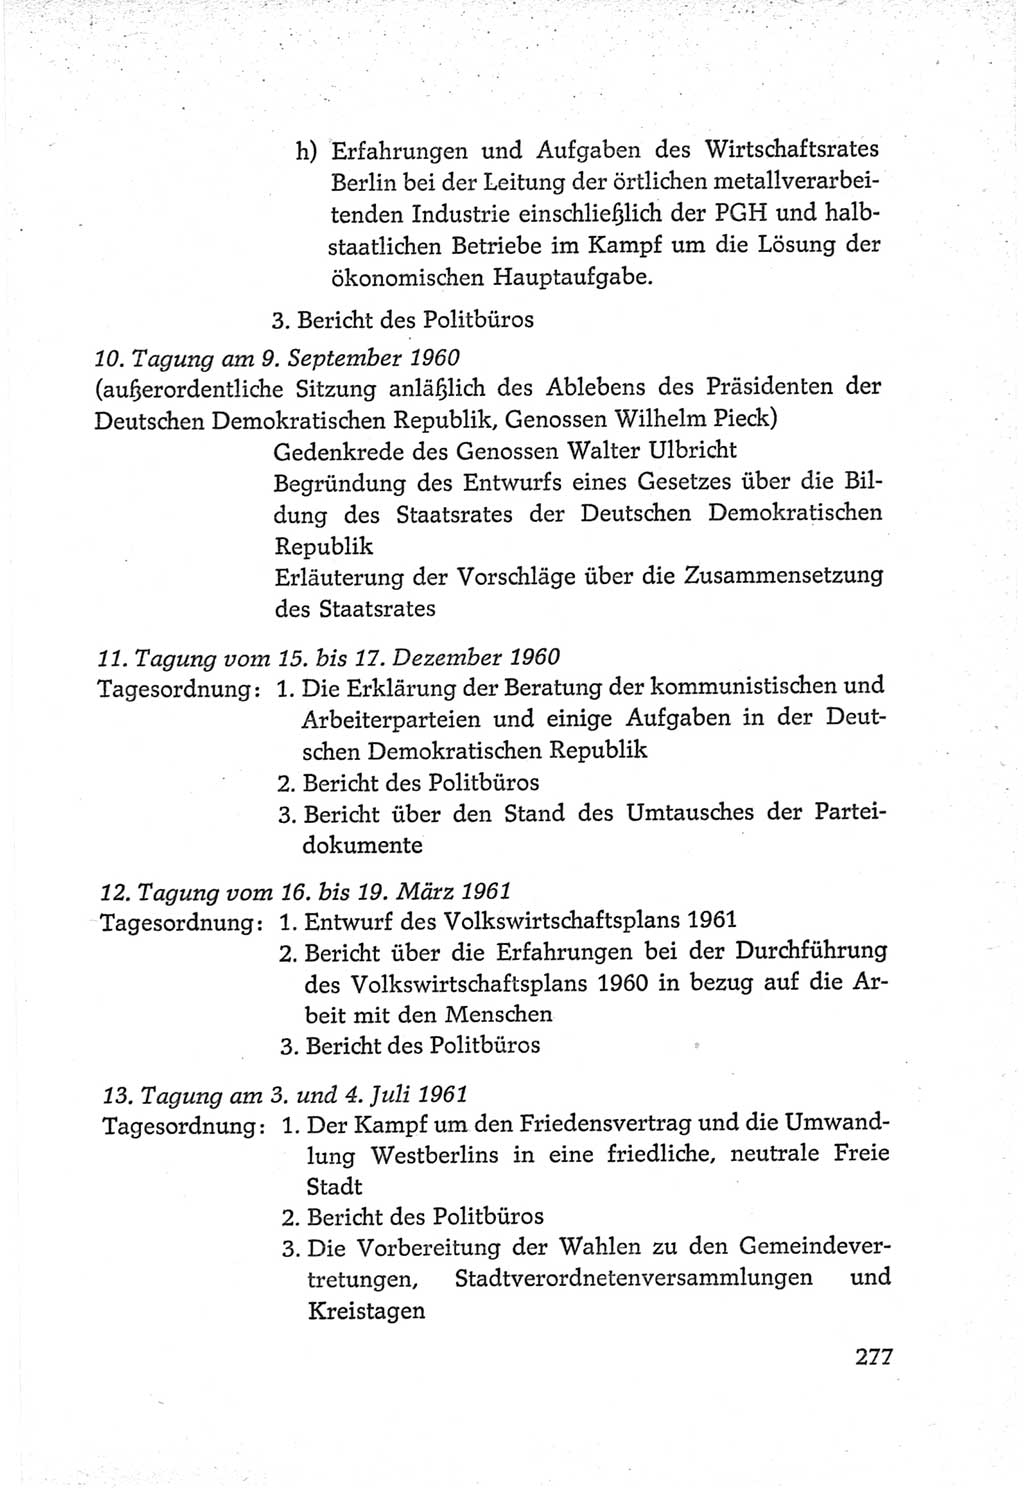 Protokoll der Verhandlungen des Ⅵ. Parteitages der Sozialistischen Einheitspartei Deutschlands (SED) [Deutsche Demokratische Republik (DDR)] 1963, Band Ⅳ, Seite 277 (Prot. Verh. Ⅵ. PT SED DDR 1963, Bd. Ⅳ, S. 277)